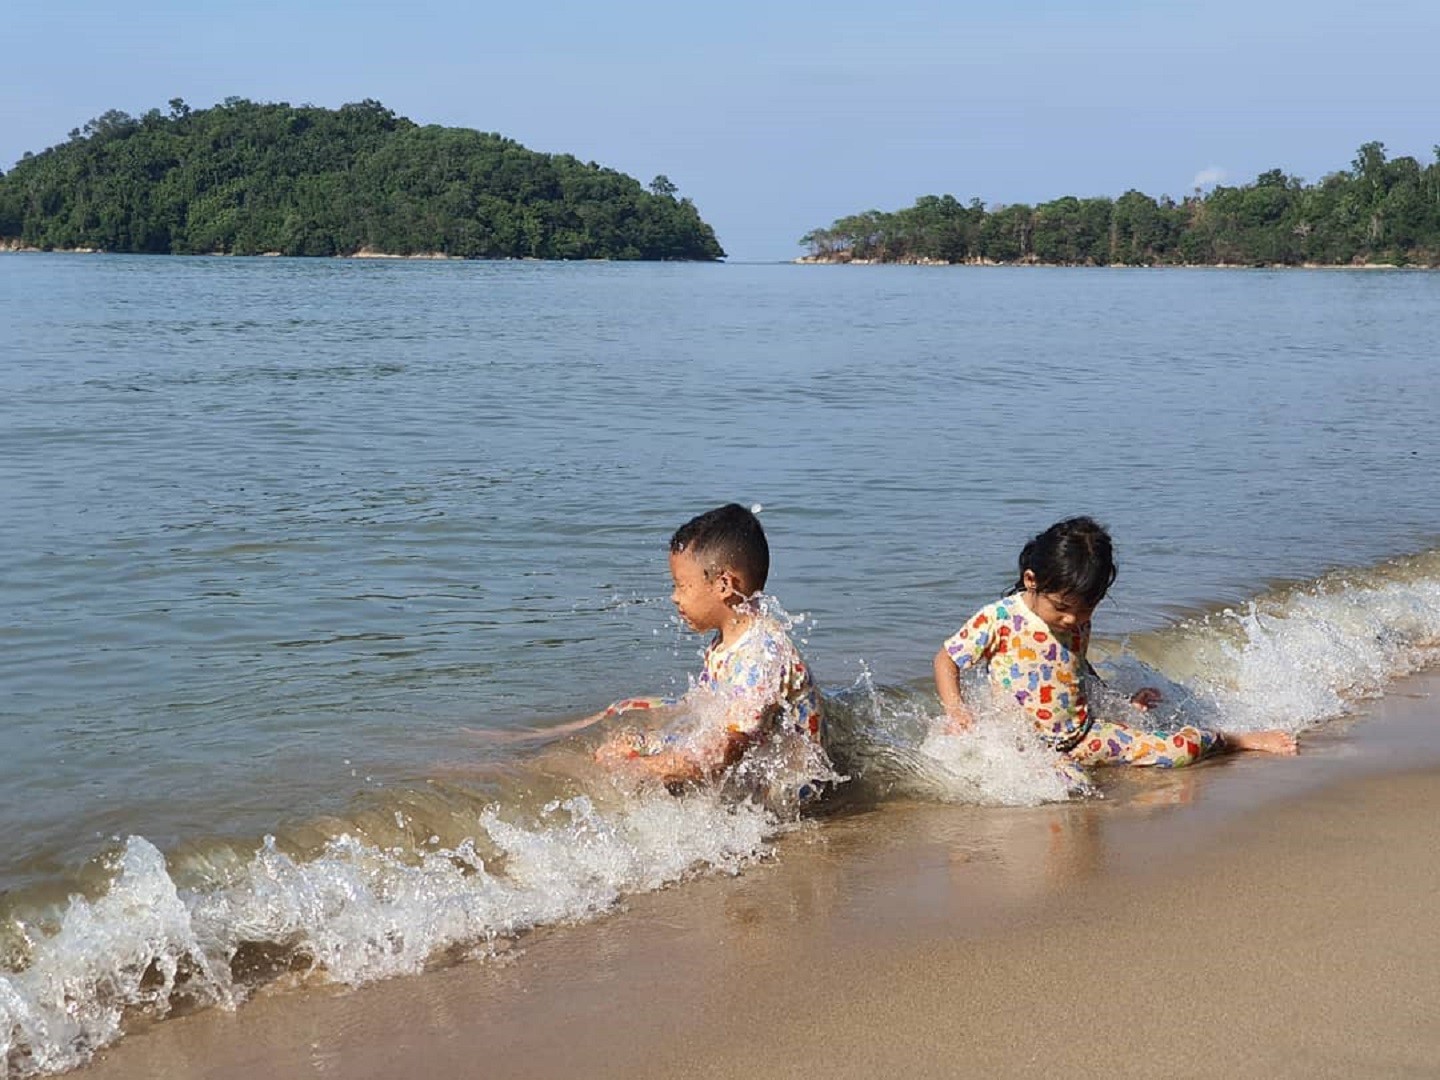 anak-anak sedang bermain air di tepi pantai